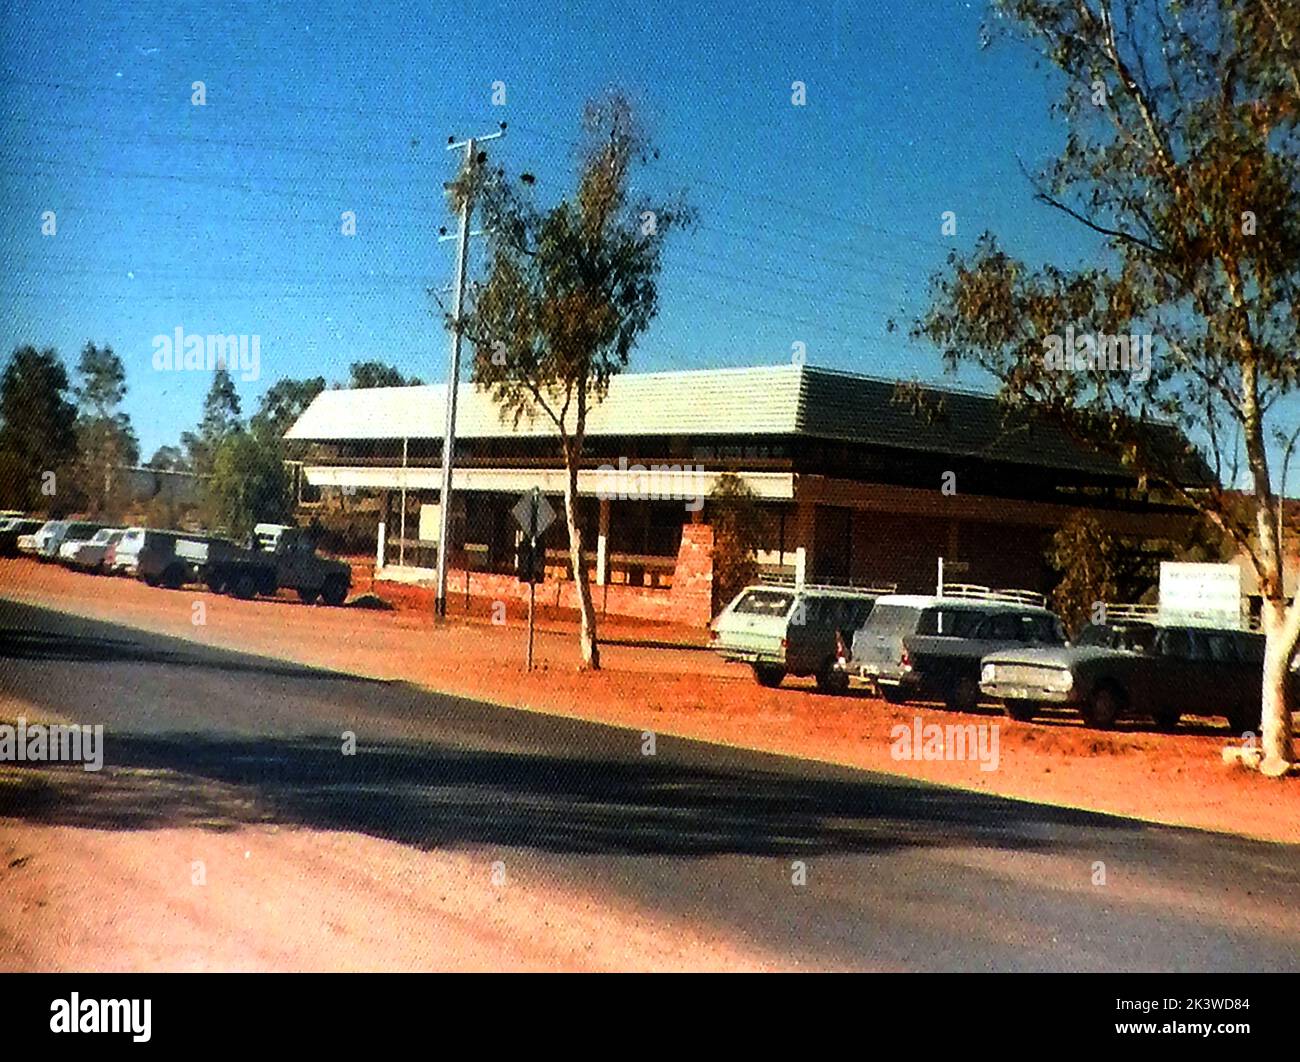 1971. Las entonces nuevas oficinas de administración del Departamento de Salud poco después de su apertura en Gap Road , Alice Springs, Australia.jpg - Foto de stock